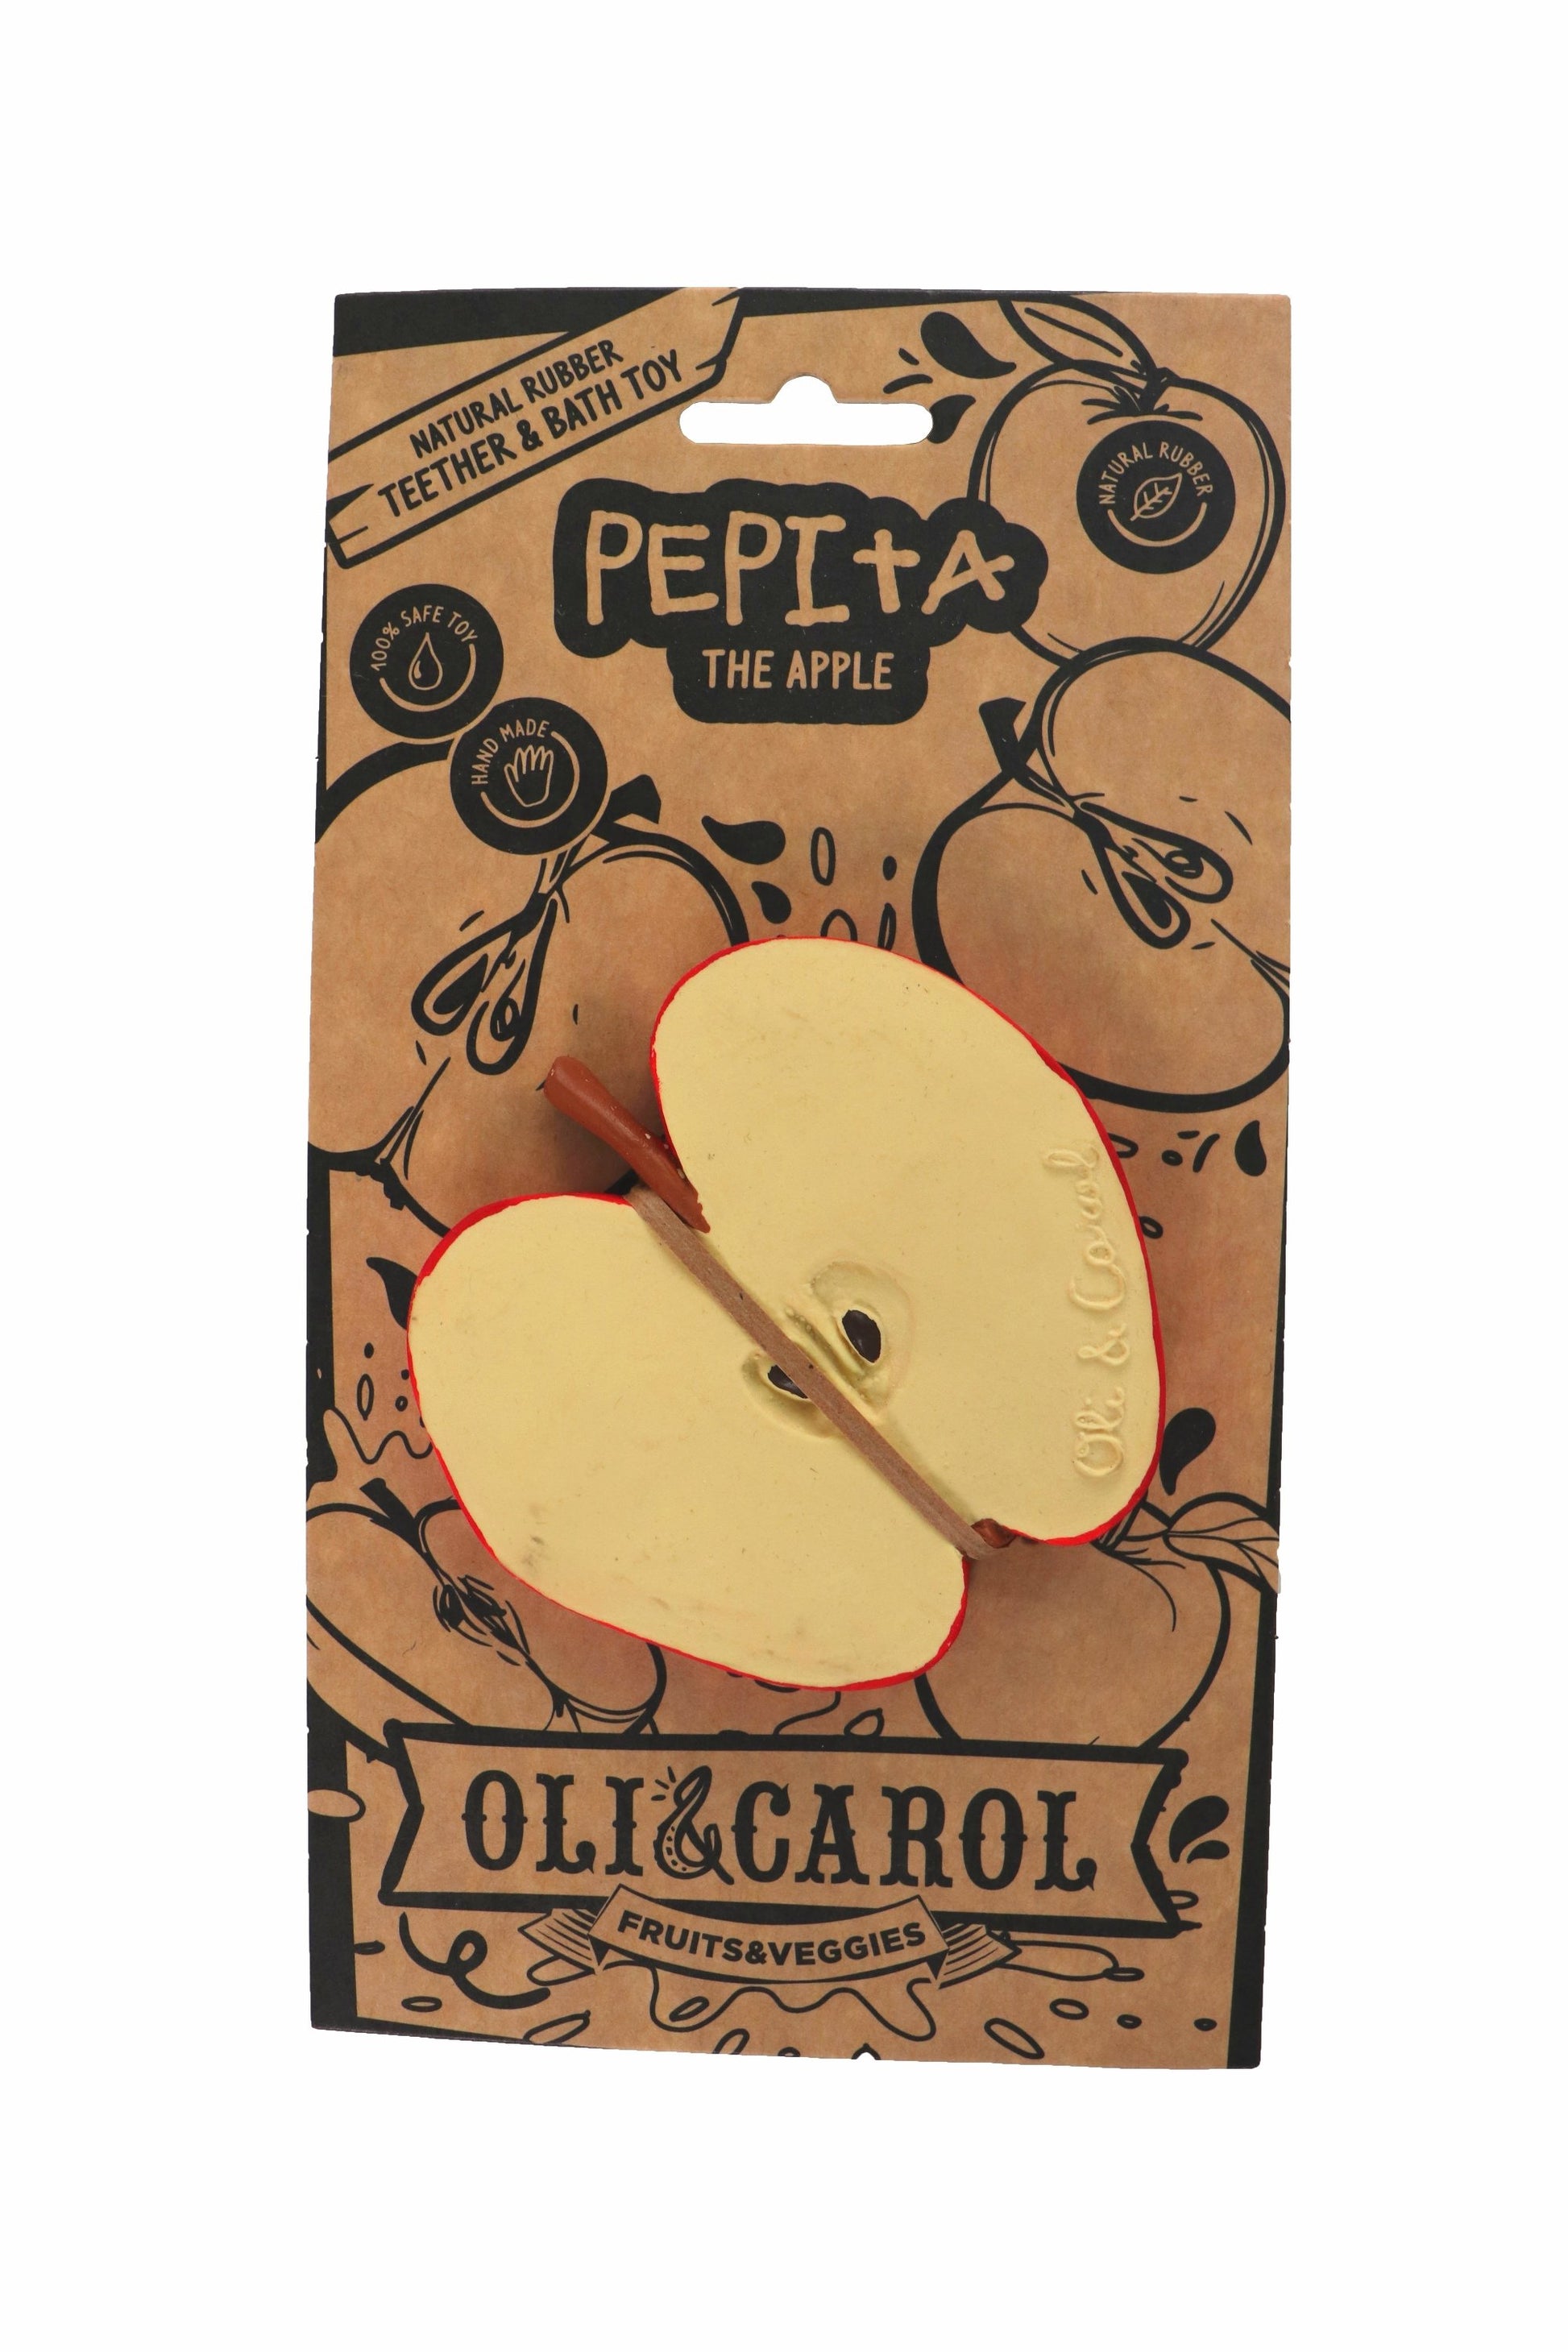 Oli&Carol Kid Toy Pepita The Apple - Ever Simplicity